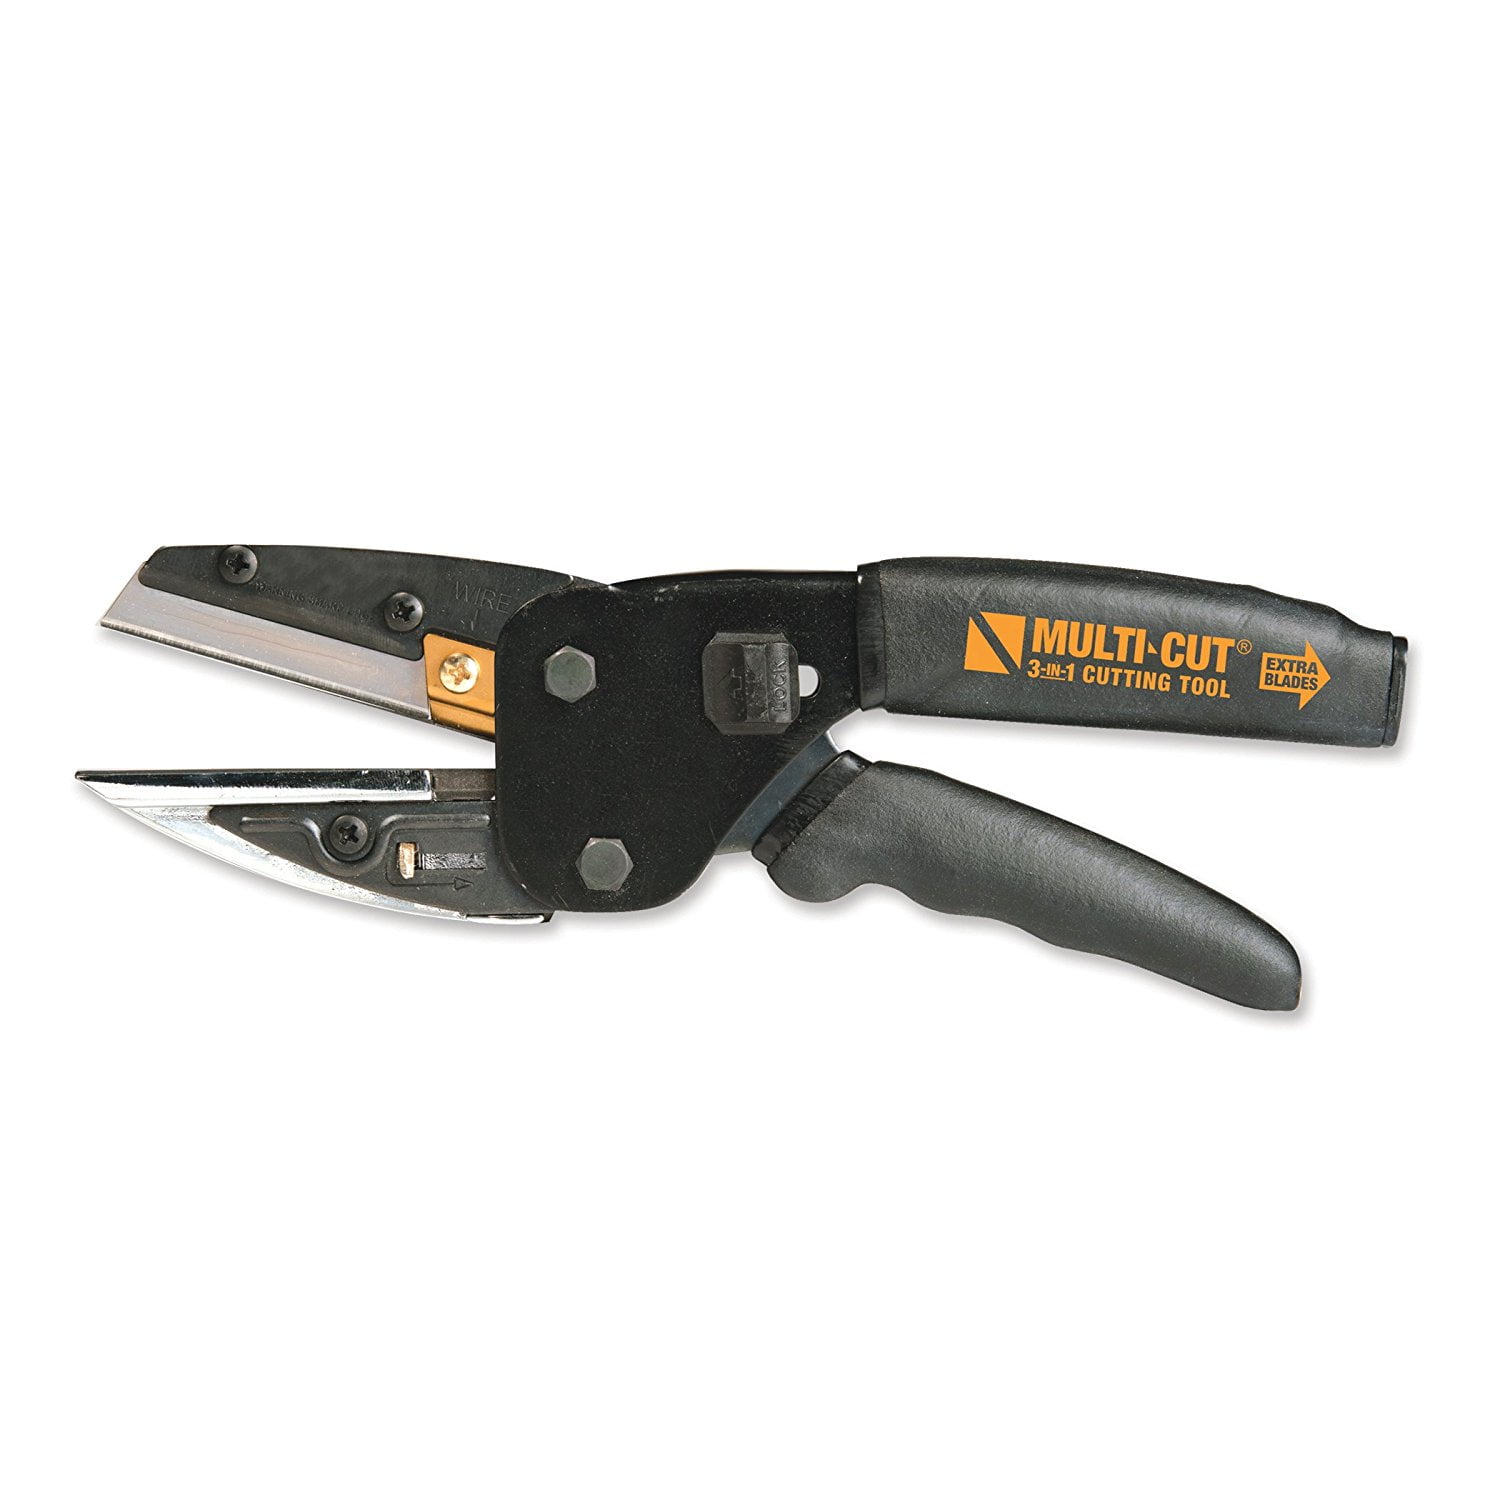 Multicut 3-in-1 Craft Cutting Tool, Built-In Wire Cutter & Utility Knife